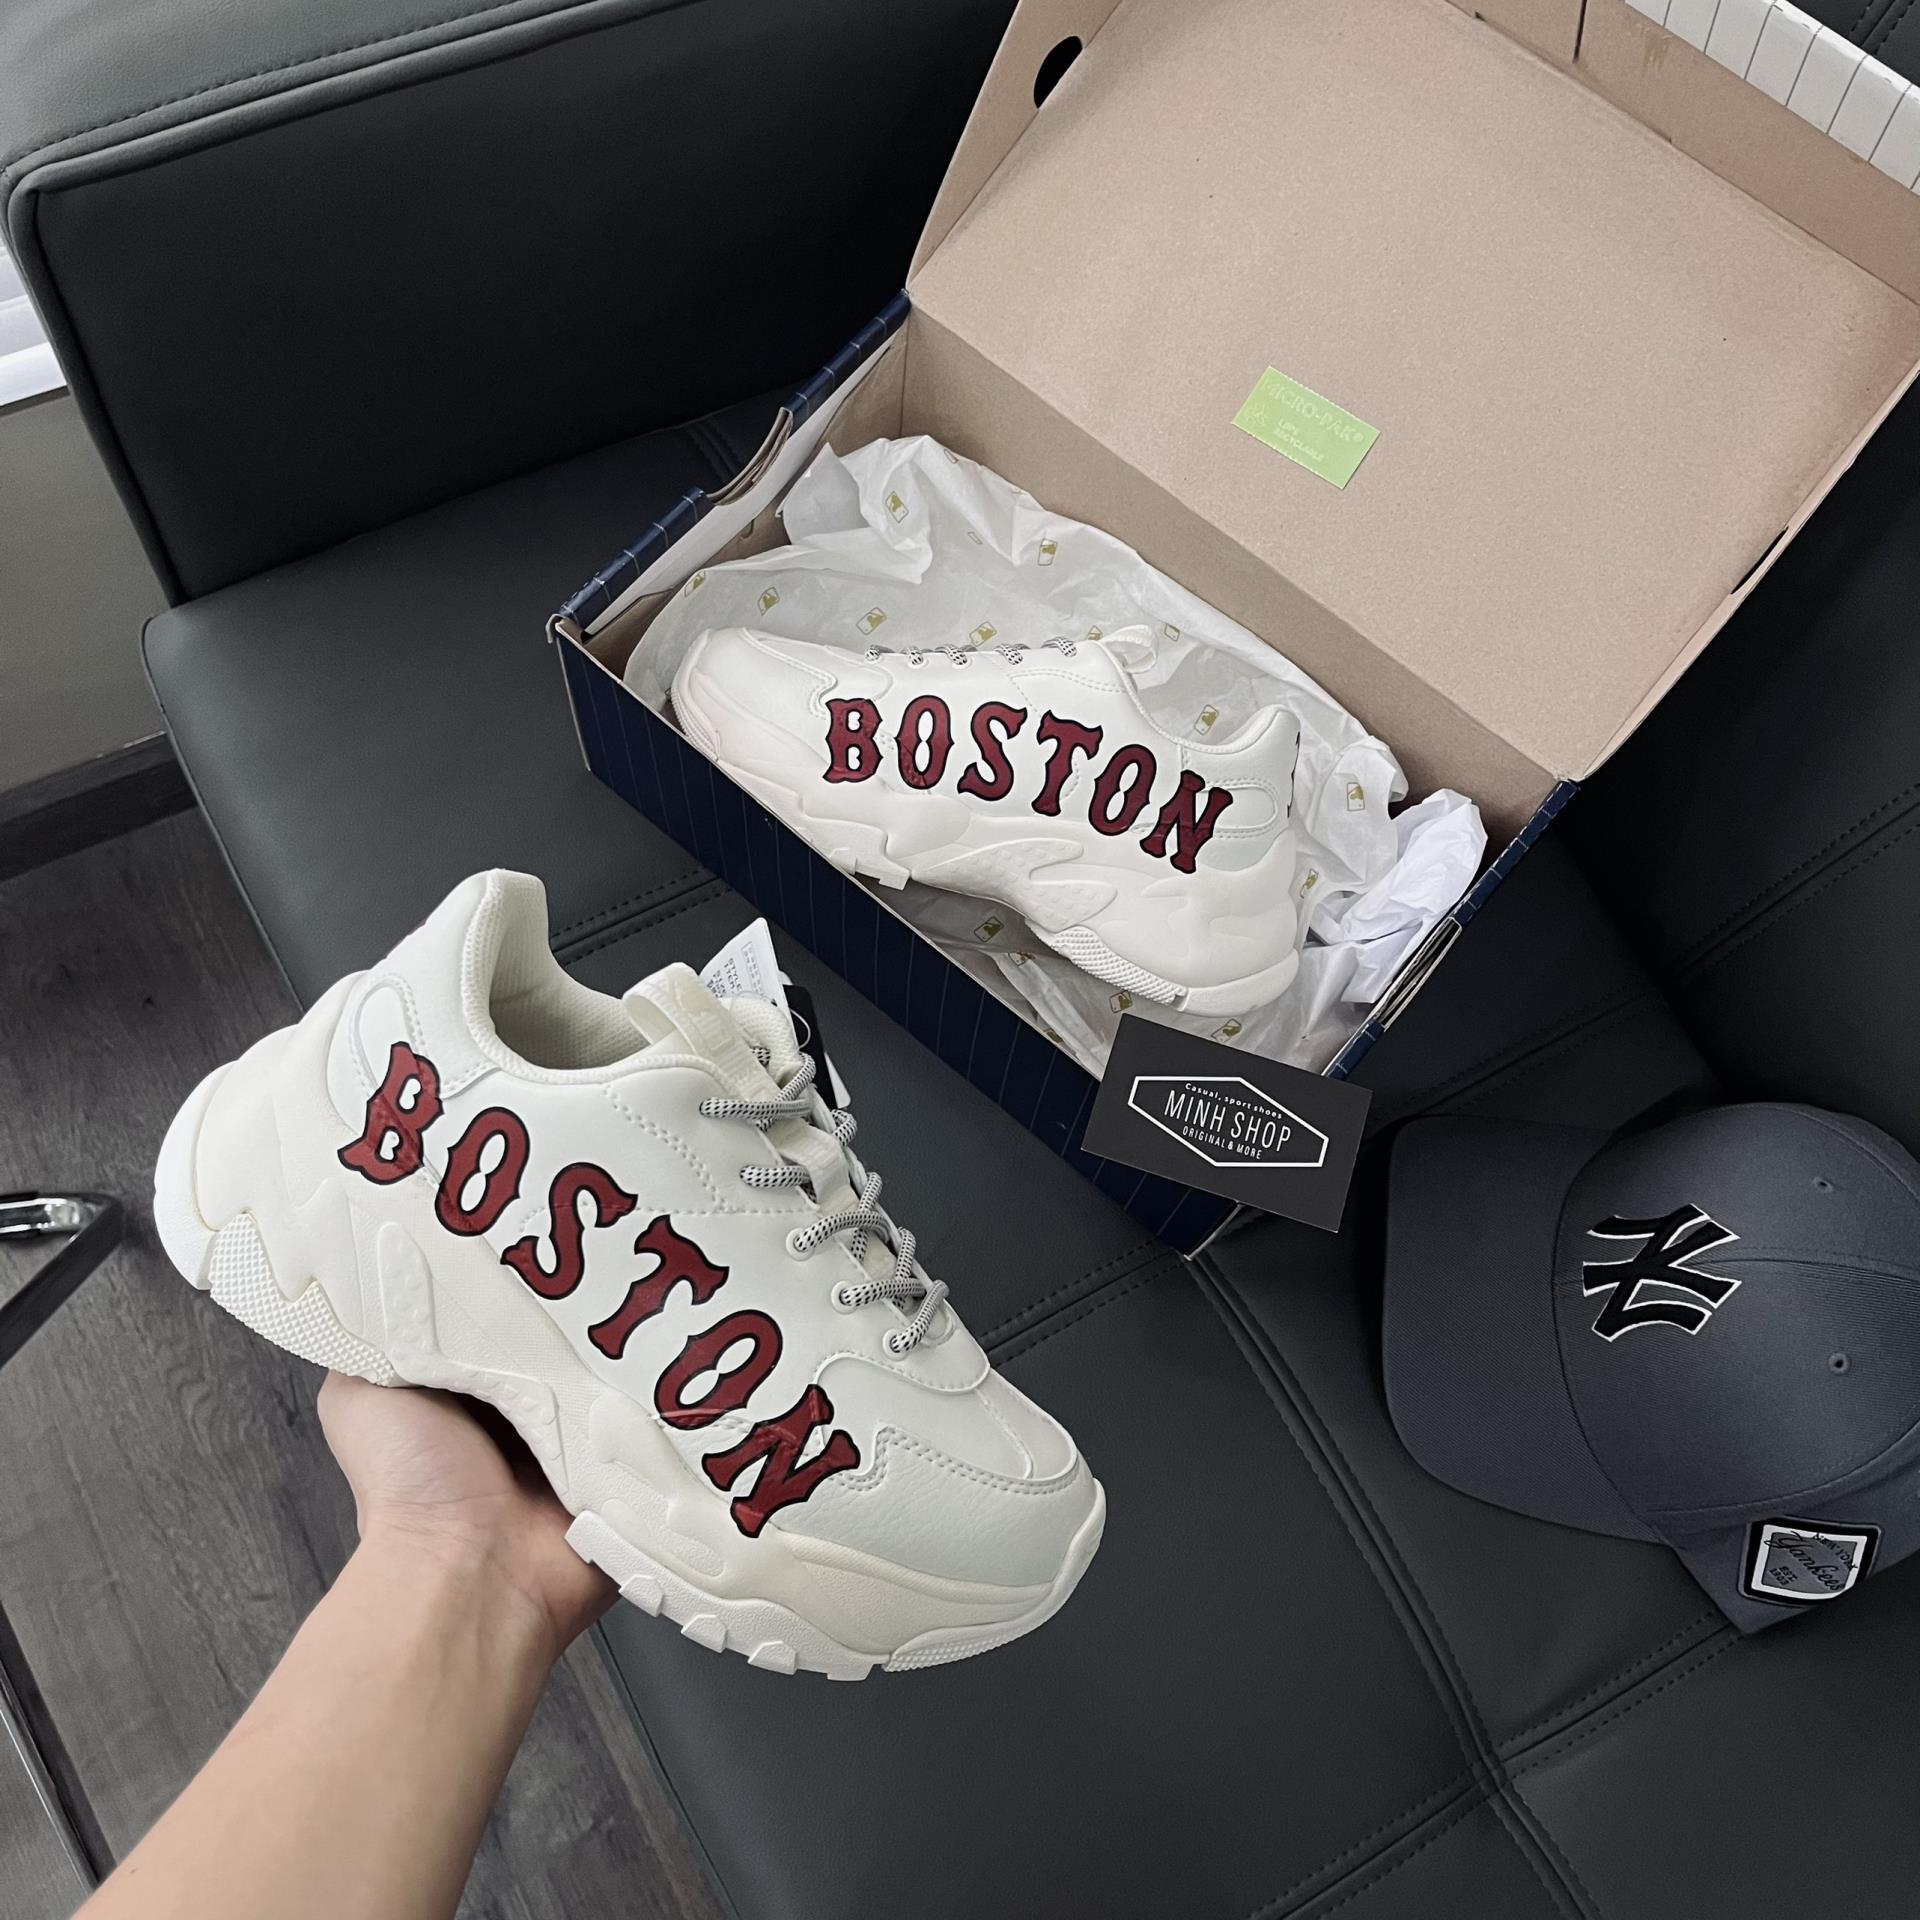 Boston nam chính hãng giá bao nhiêu 7 địa chỉ mua giày boston real   Coolmate